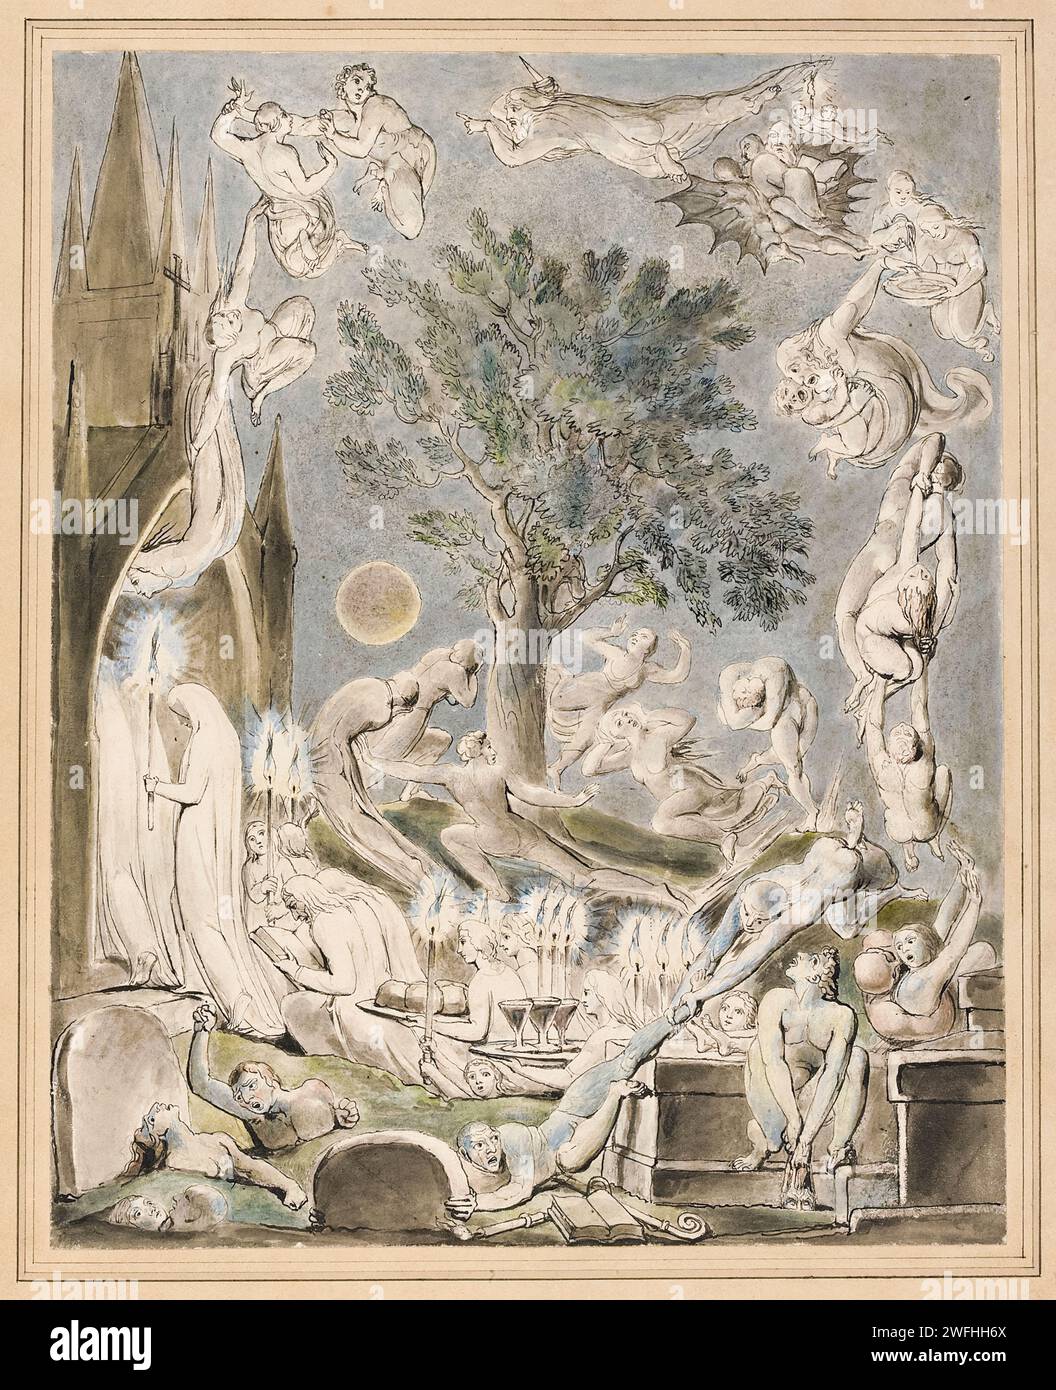 «Les gambols des fantômes selon leurs affections antérieures au jugement final» 1805 aquarelle de William Blake (1757-1827) commandée par Robert Cromek (1770-1812) pour illustrer son édition de «la tombe» du poète Robert Blair publiée en 1808. Banque D'Images